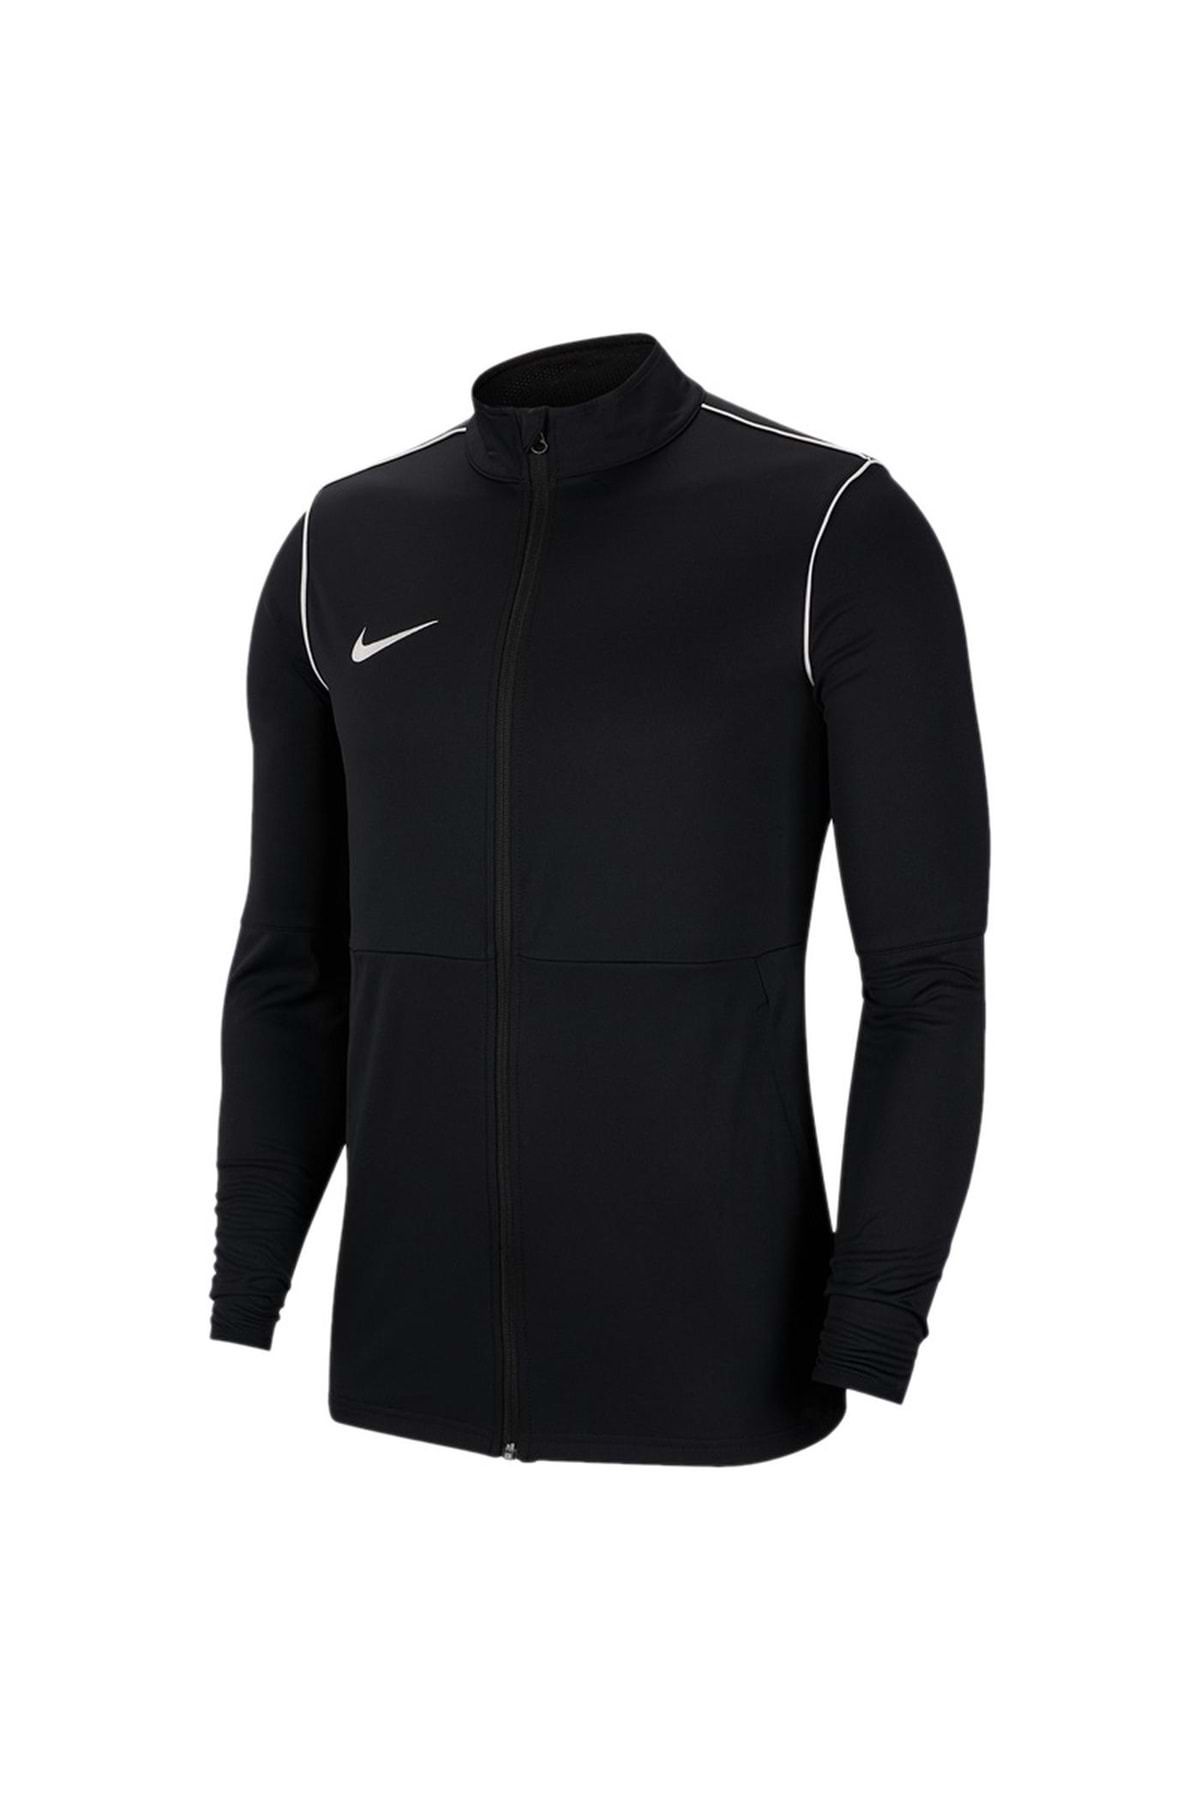 Nike Bv6885-010 Dri-fit Park 20 Knit Track Jacket Erkek Ceket Siyah